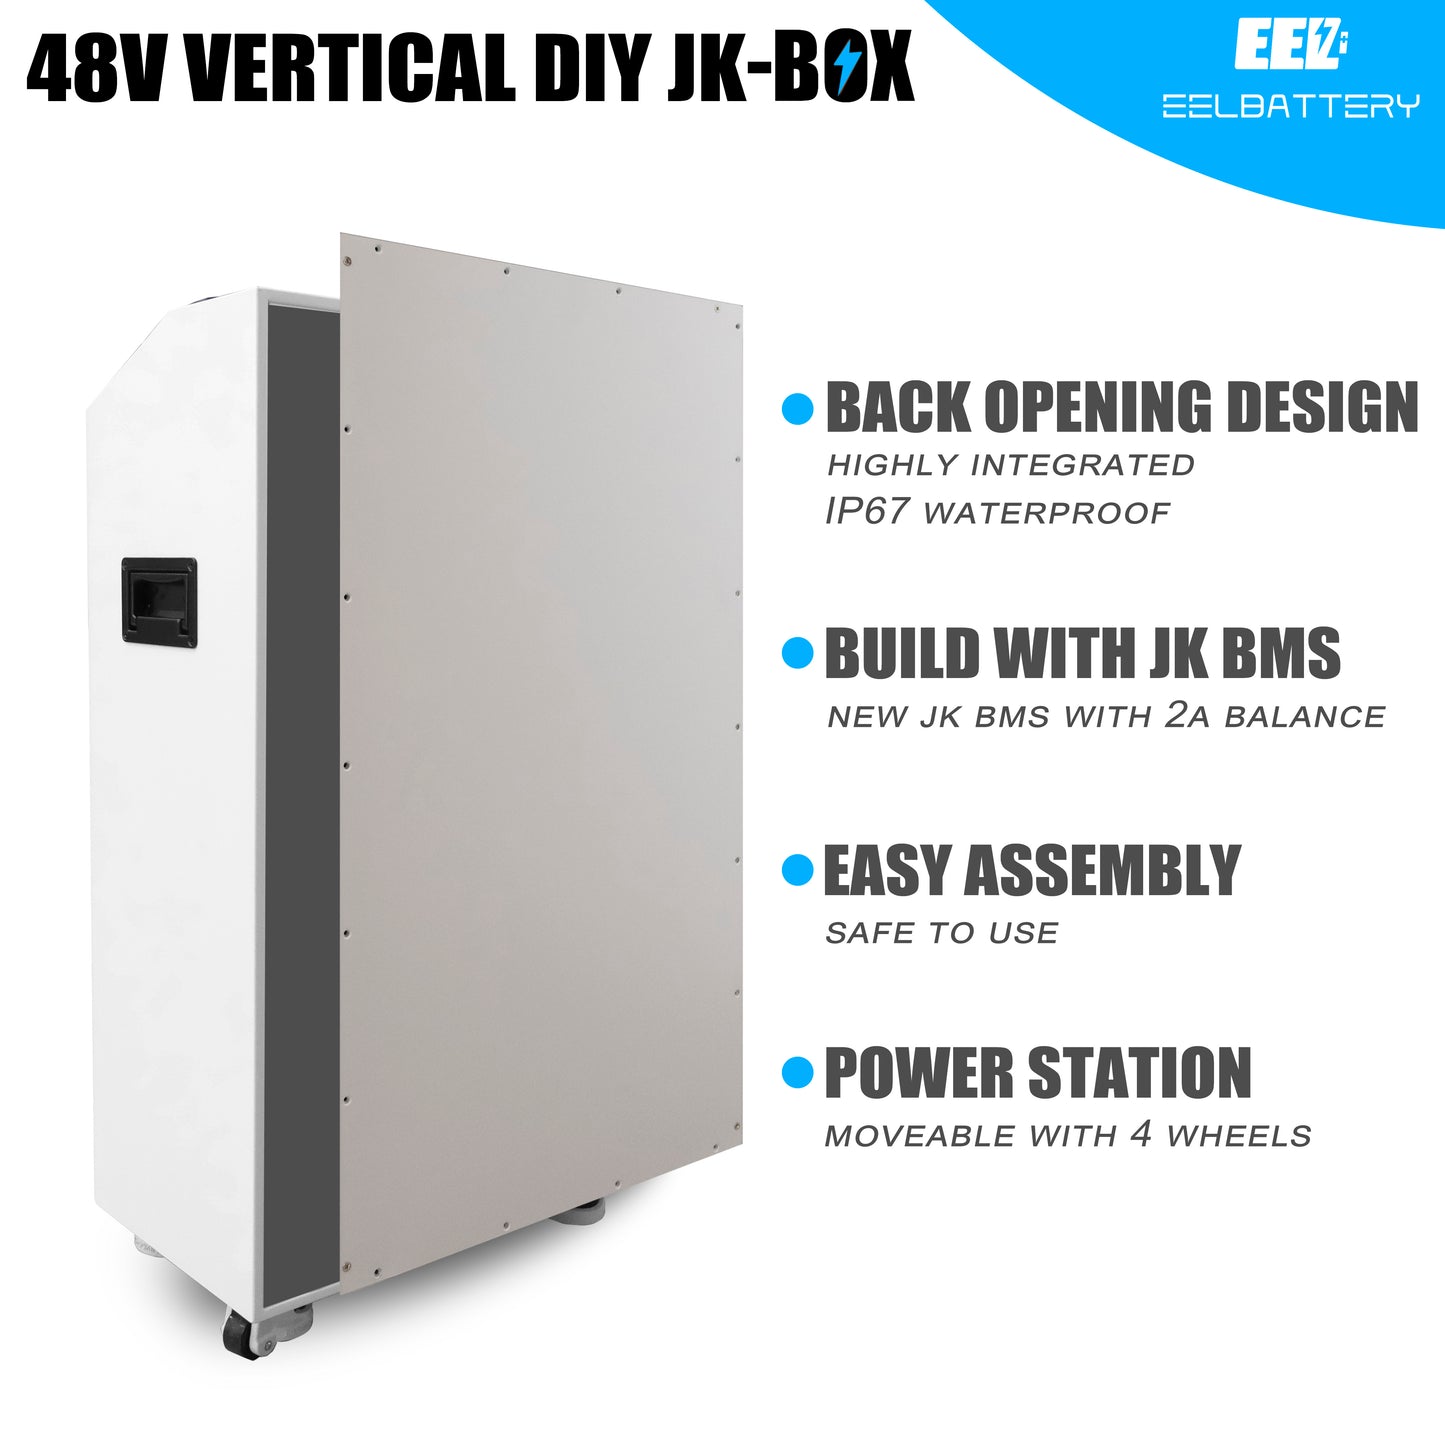 EEL 48V 16S DIY vertikale Batteriekasten-DIY-Kits mit JK-Wechselrichter BMS und Rädern